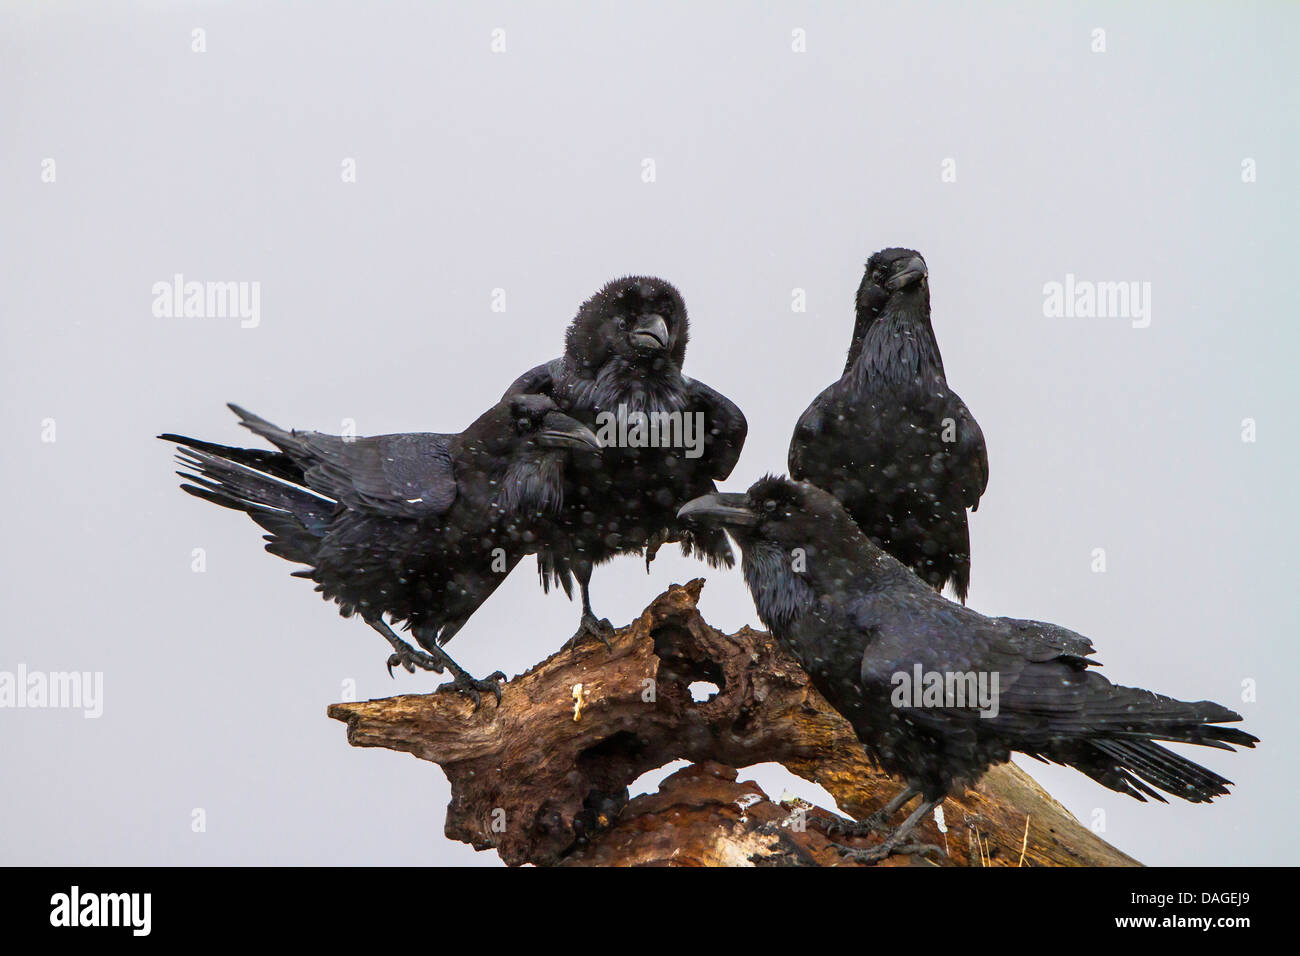 El cuervo común (Corvus corax), cuatro cuervos sobre un árbol root durante las nevadas, Bulgaria, Sredna Gora, Sliven Foto de stock